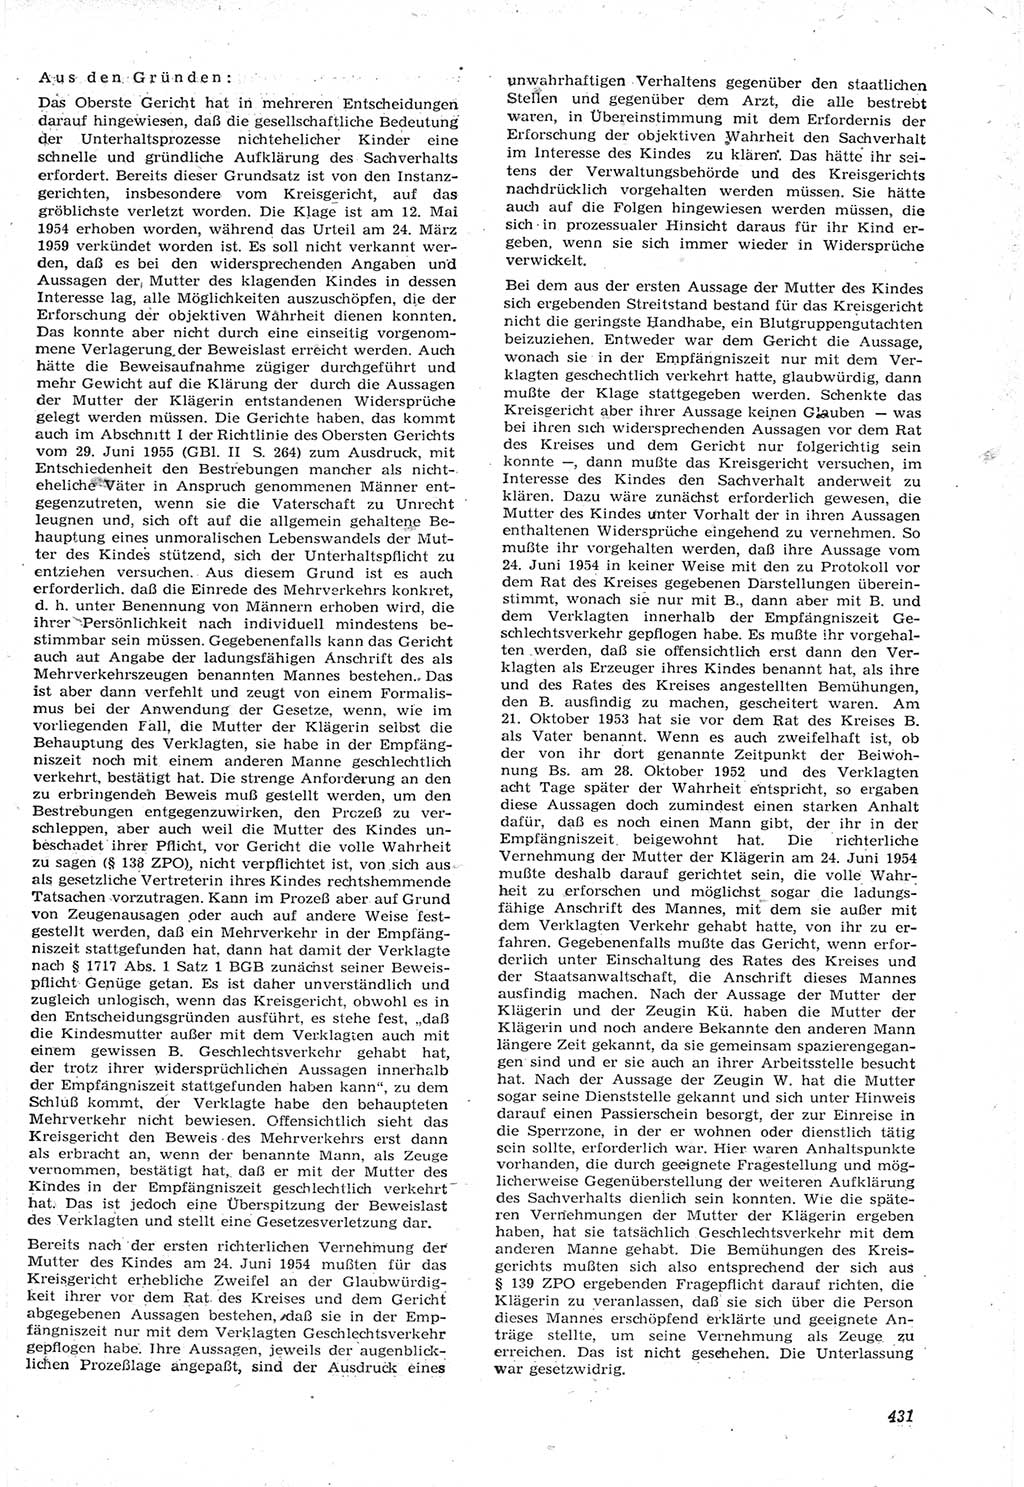 Neue Justiz (NJ), Zeitschrift für Recht und Rechtswissenschaft [Deutsche Demokratische Republik (DDR)], 15. Jahrgang 1961, Seite 431 (NJ DDR 1961, S. 431)